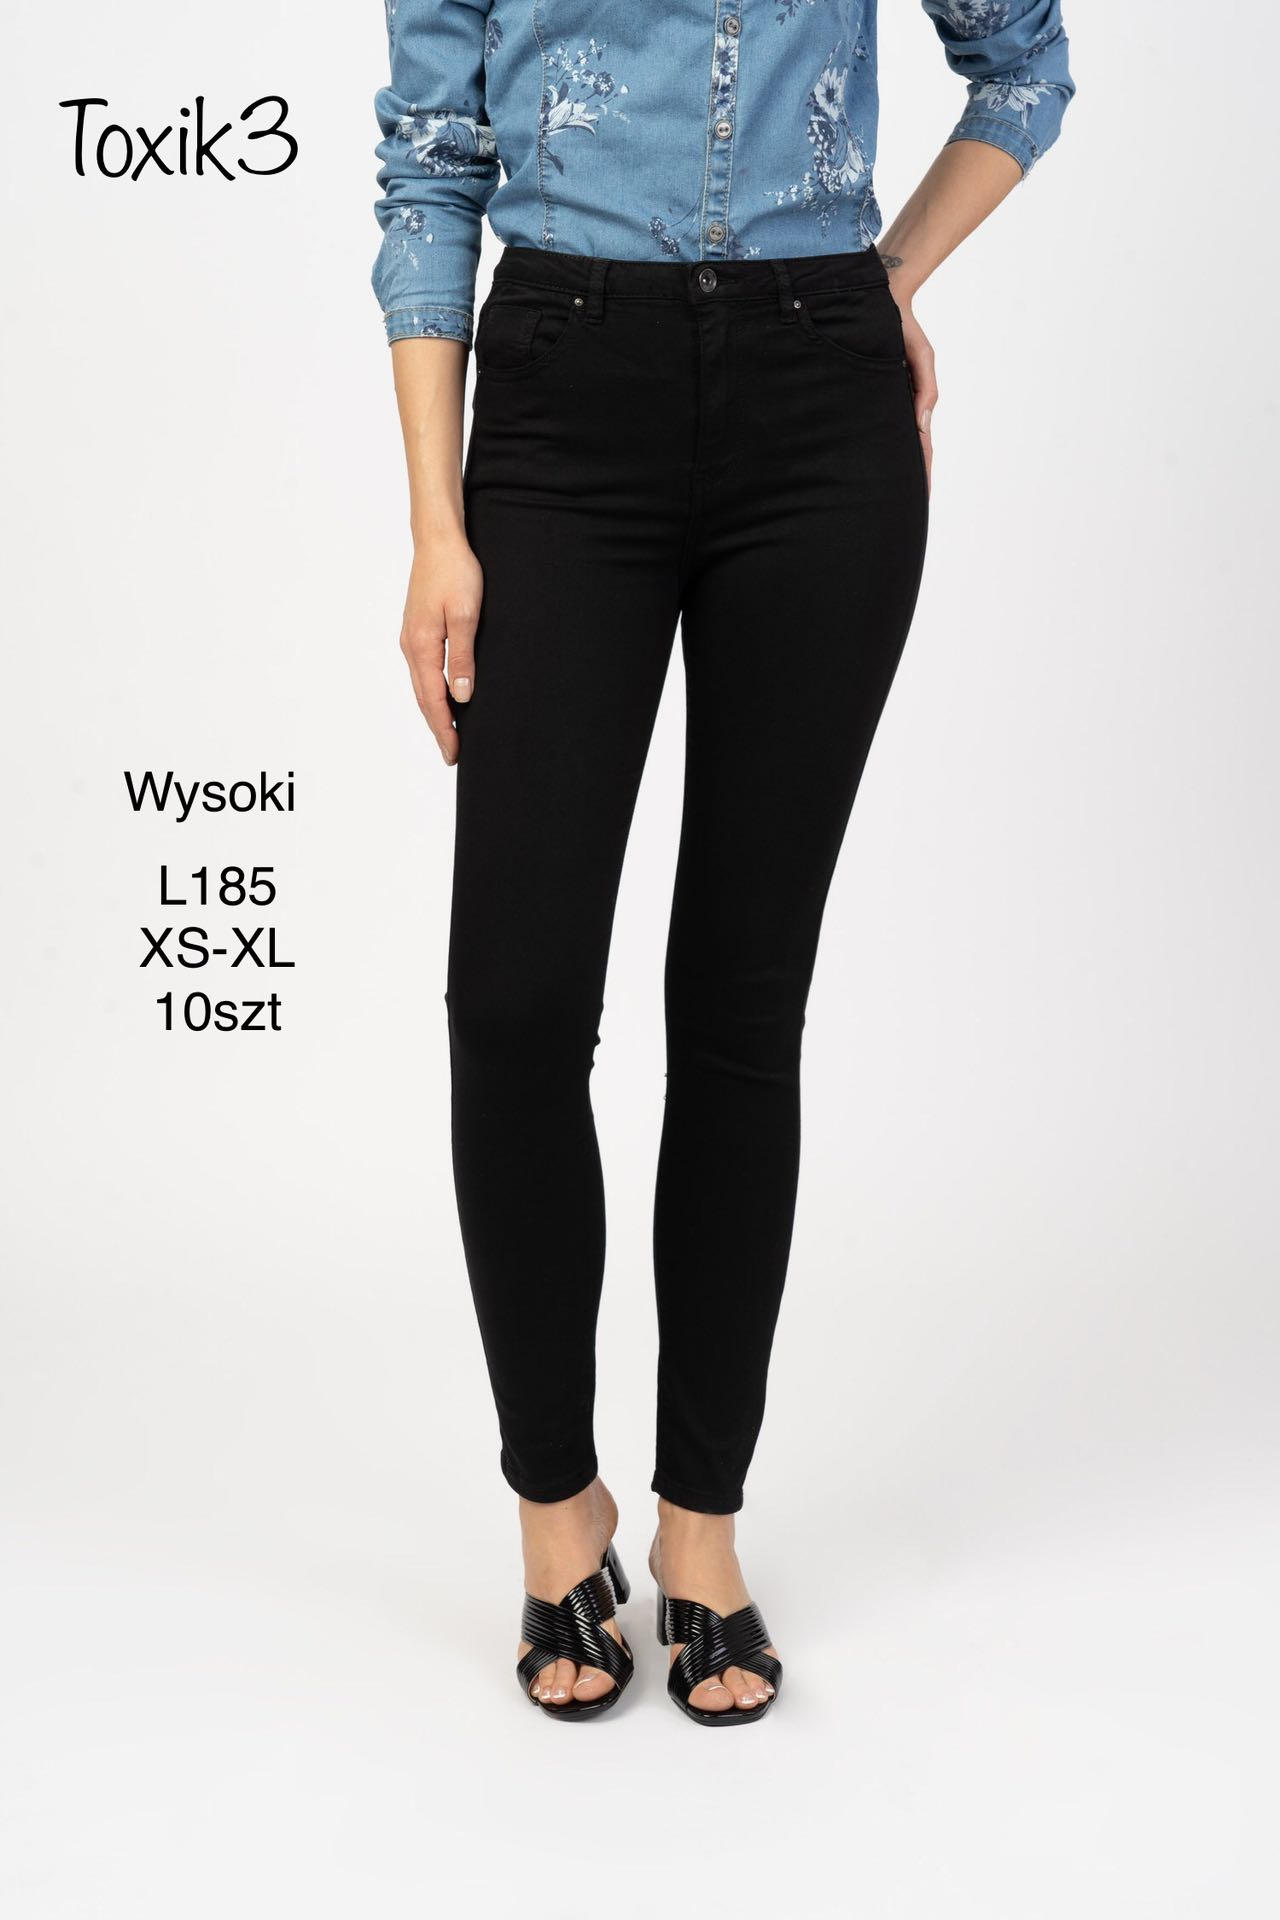 Spodnie damskie jeans Roz  XS-XL.  1 kolor . Paczka 10szt